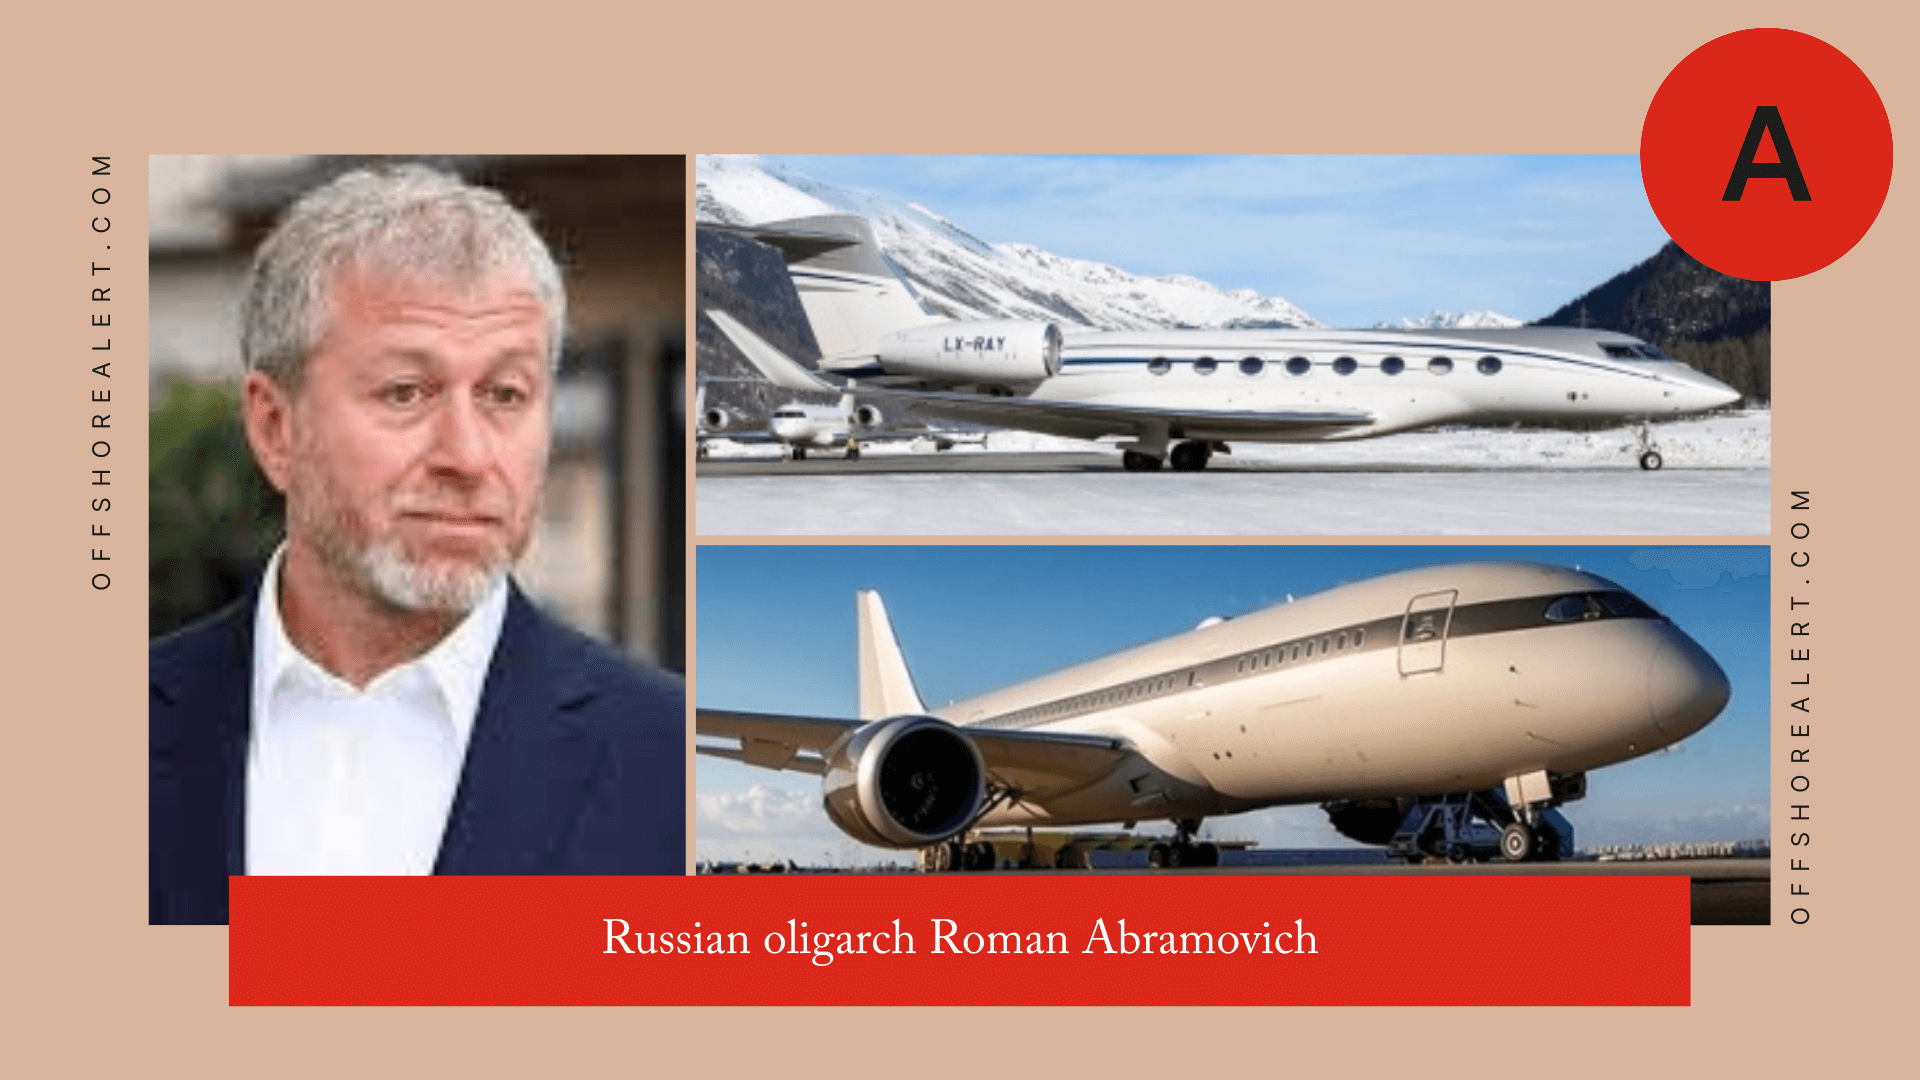 Roman Abramovich planes